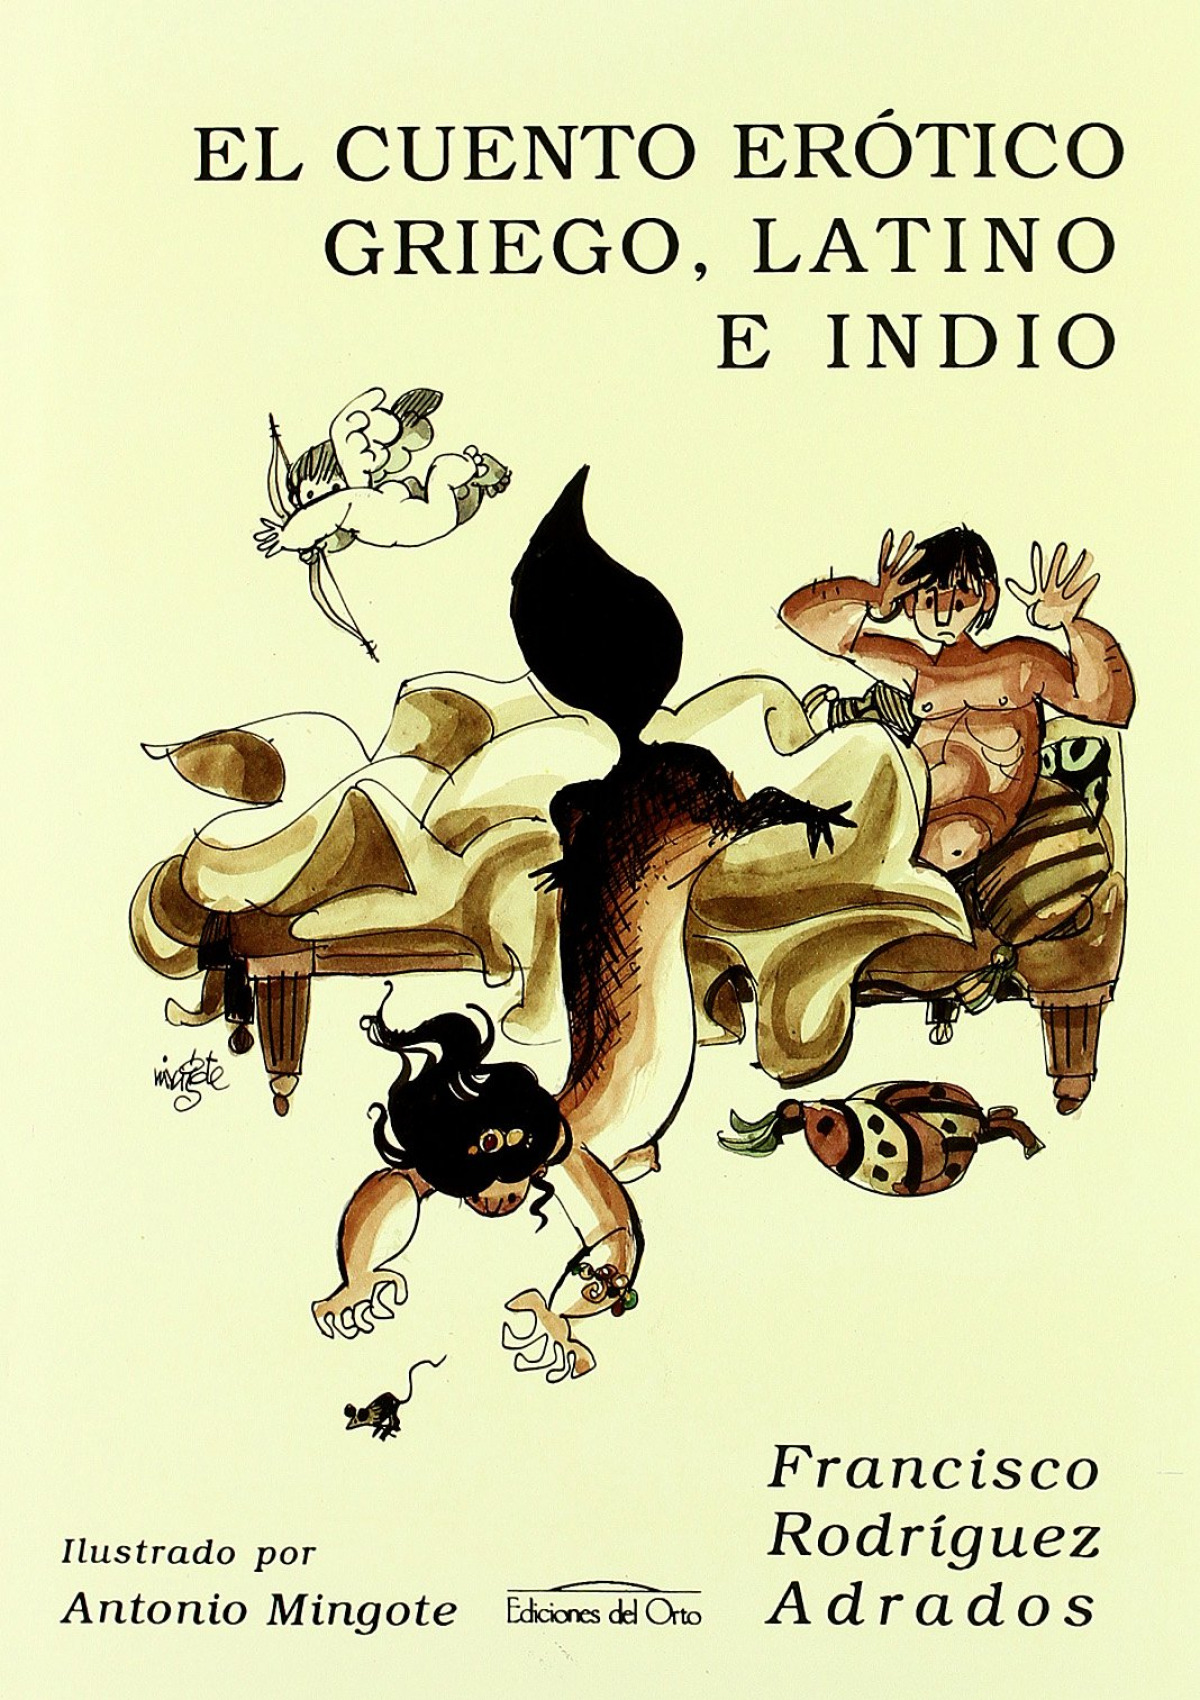 Cuento erotico griego, latino e indio - Rodriguez Adrados, Francisco